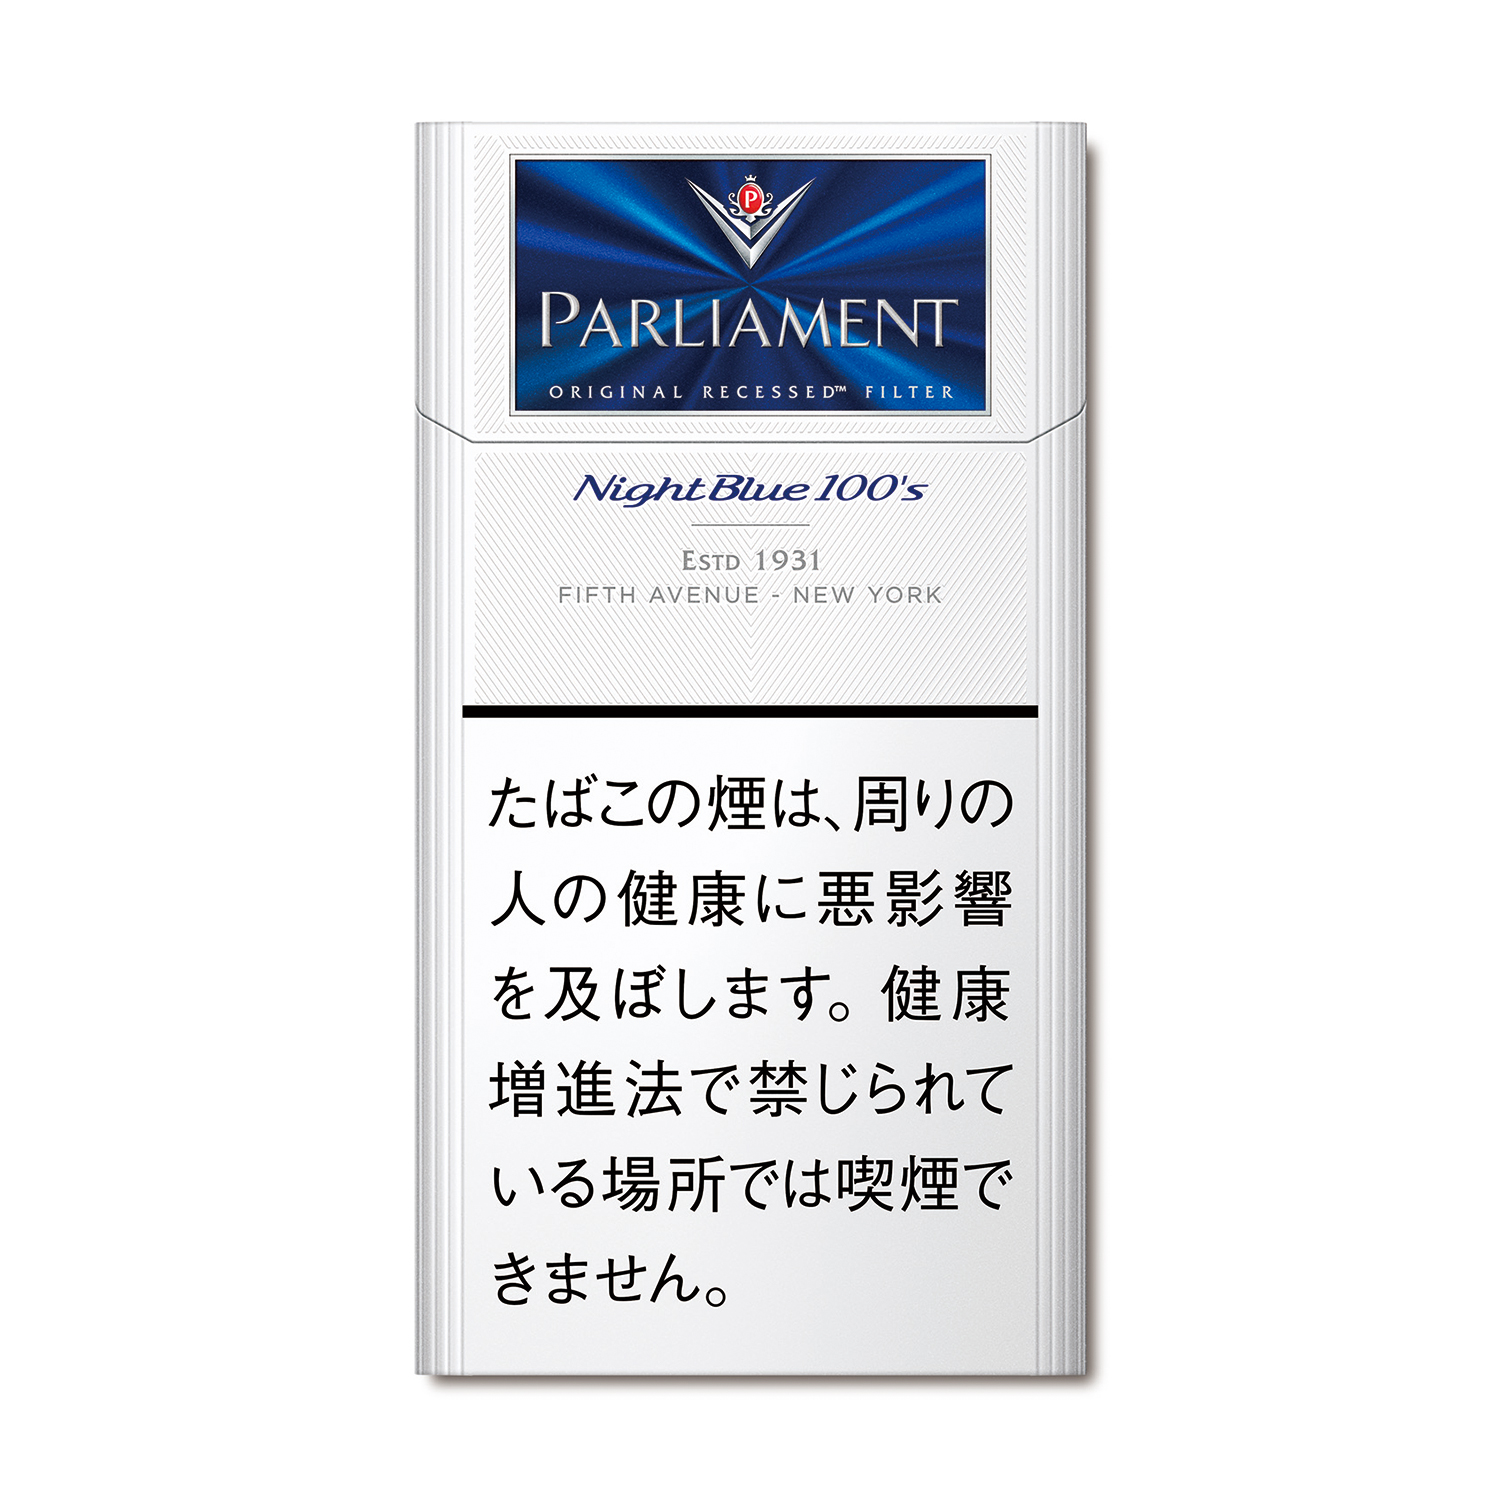 パーラメント ナイトブルー 100 ボックス / タール:9mg ニコチン0.7mg